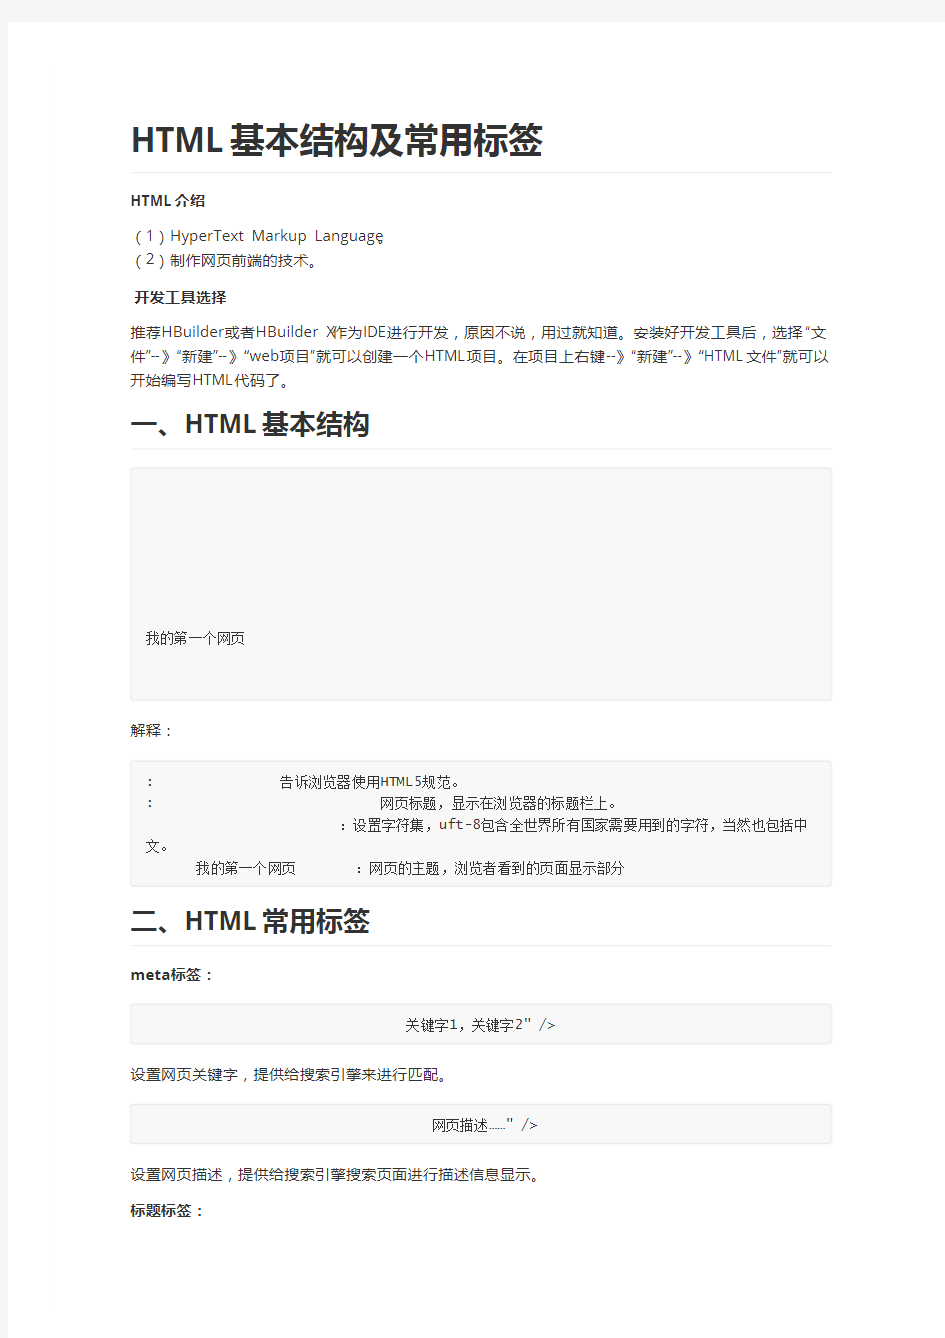 01-HTML基本结构及常用标签